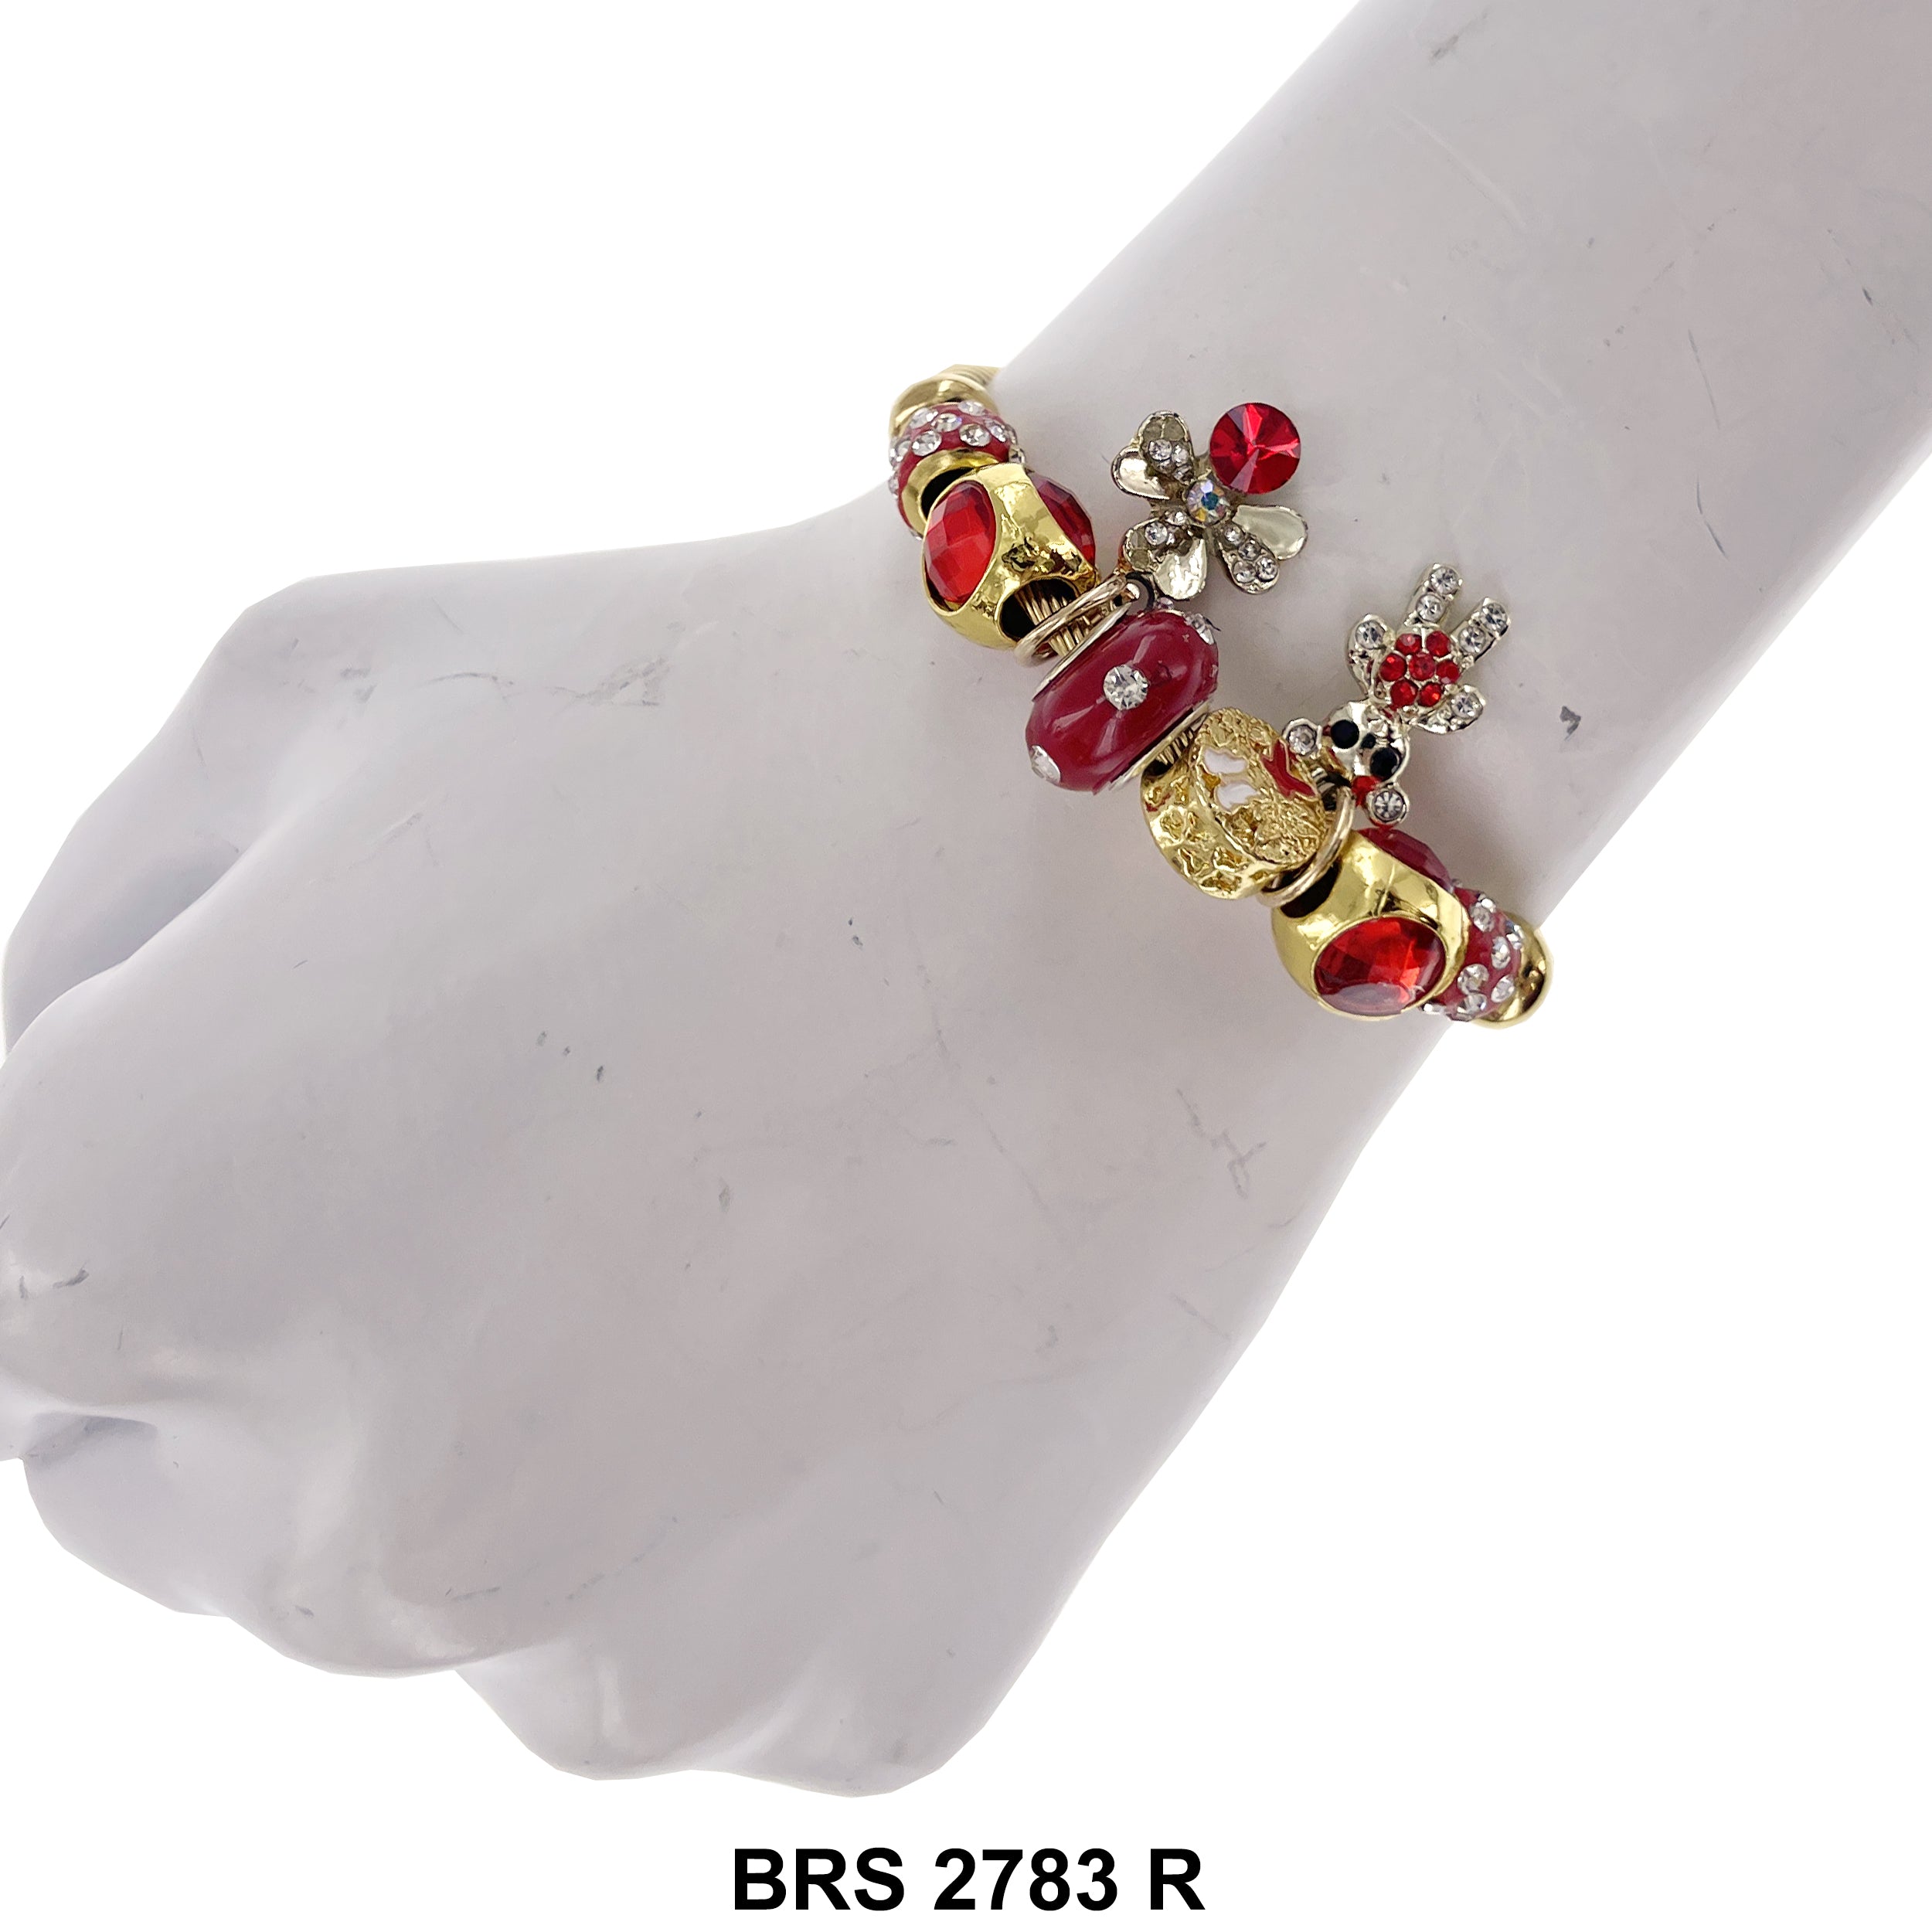 Hanging Charm Bracelet BRS 2783 R